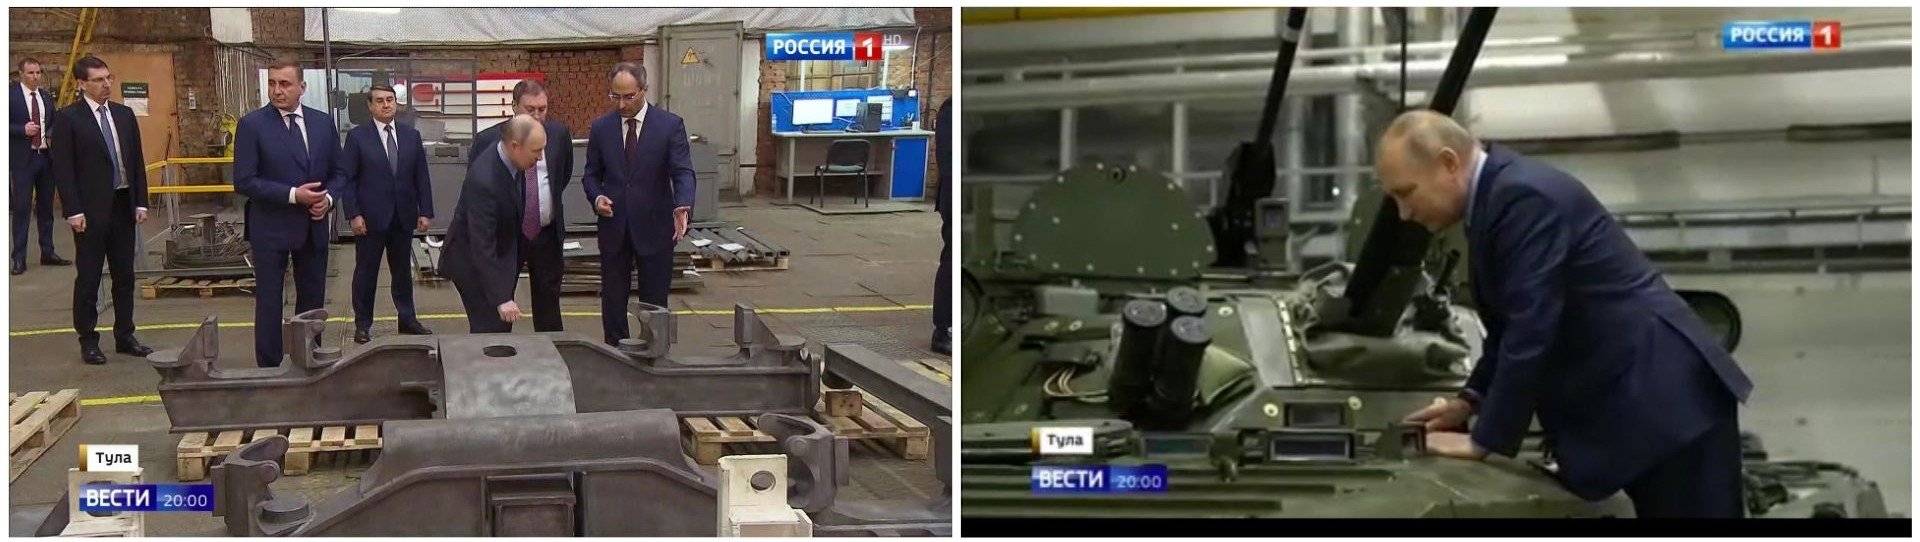 Dwa zdjęcia pokazujące Putina w fabryce. Na pierwszym Putin puka w szynę, na drugim - zagląda do czołgu